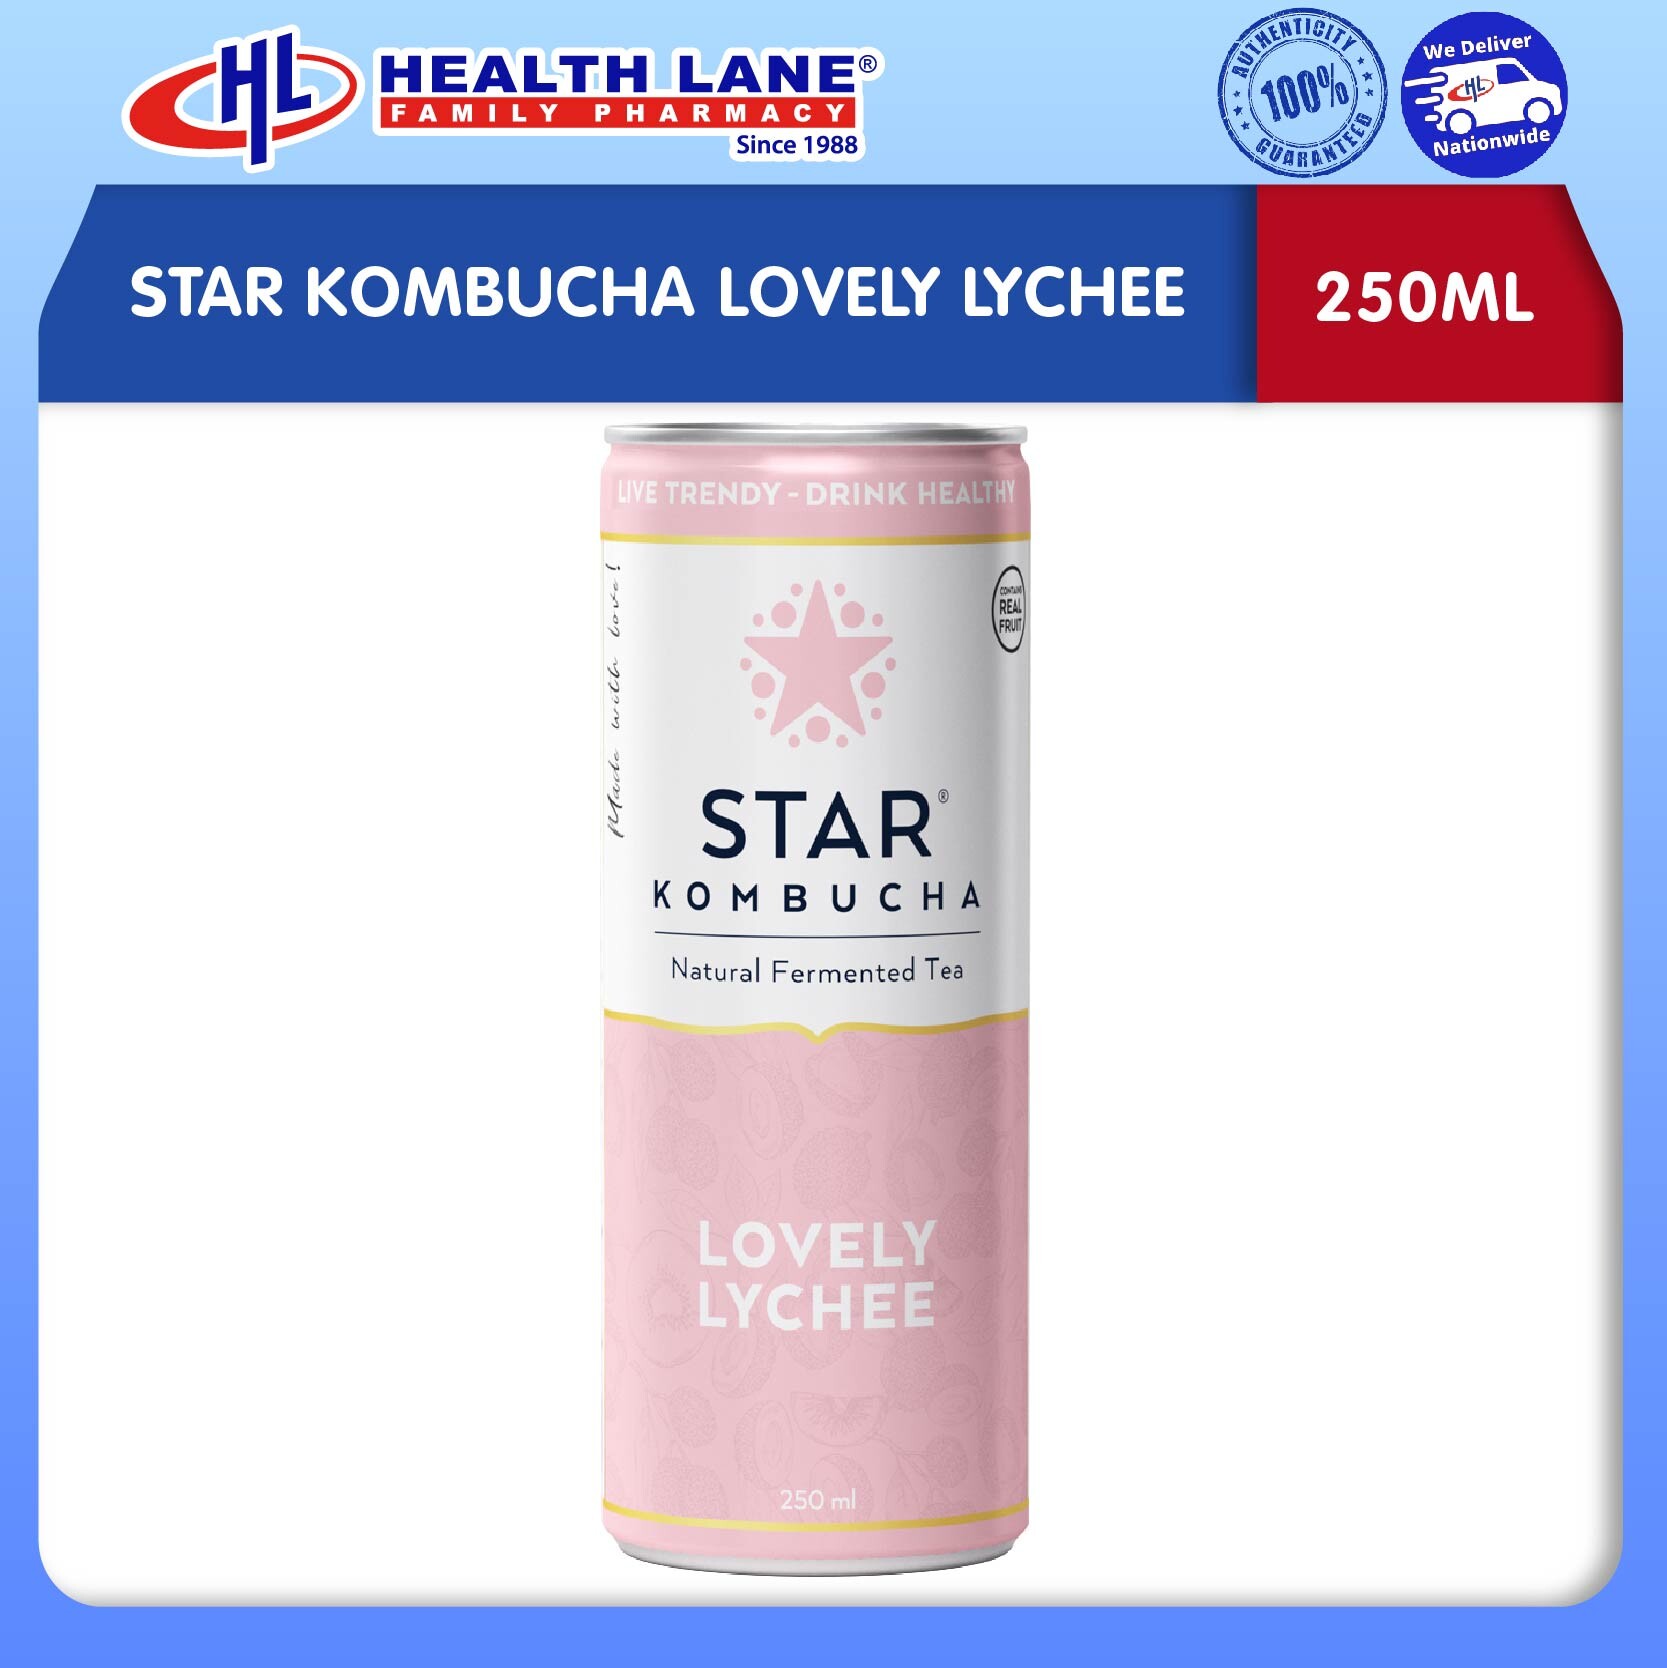 STAR KOMBUCHA LOVELY LYCHEE (250ML)